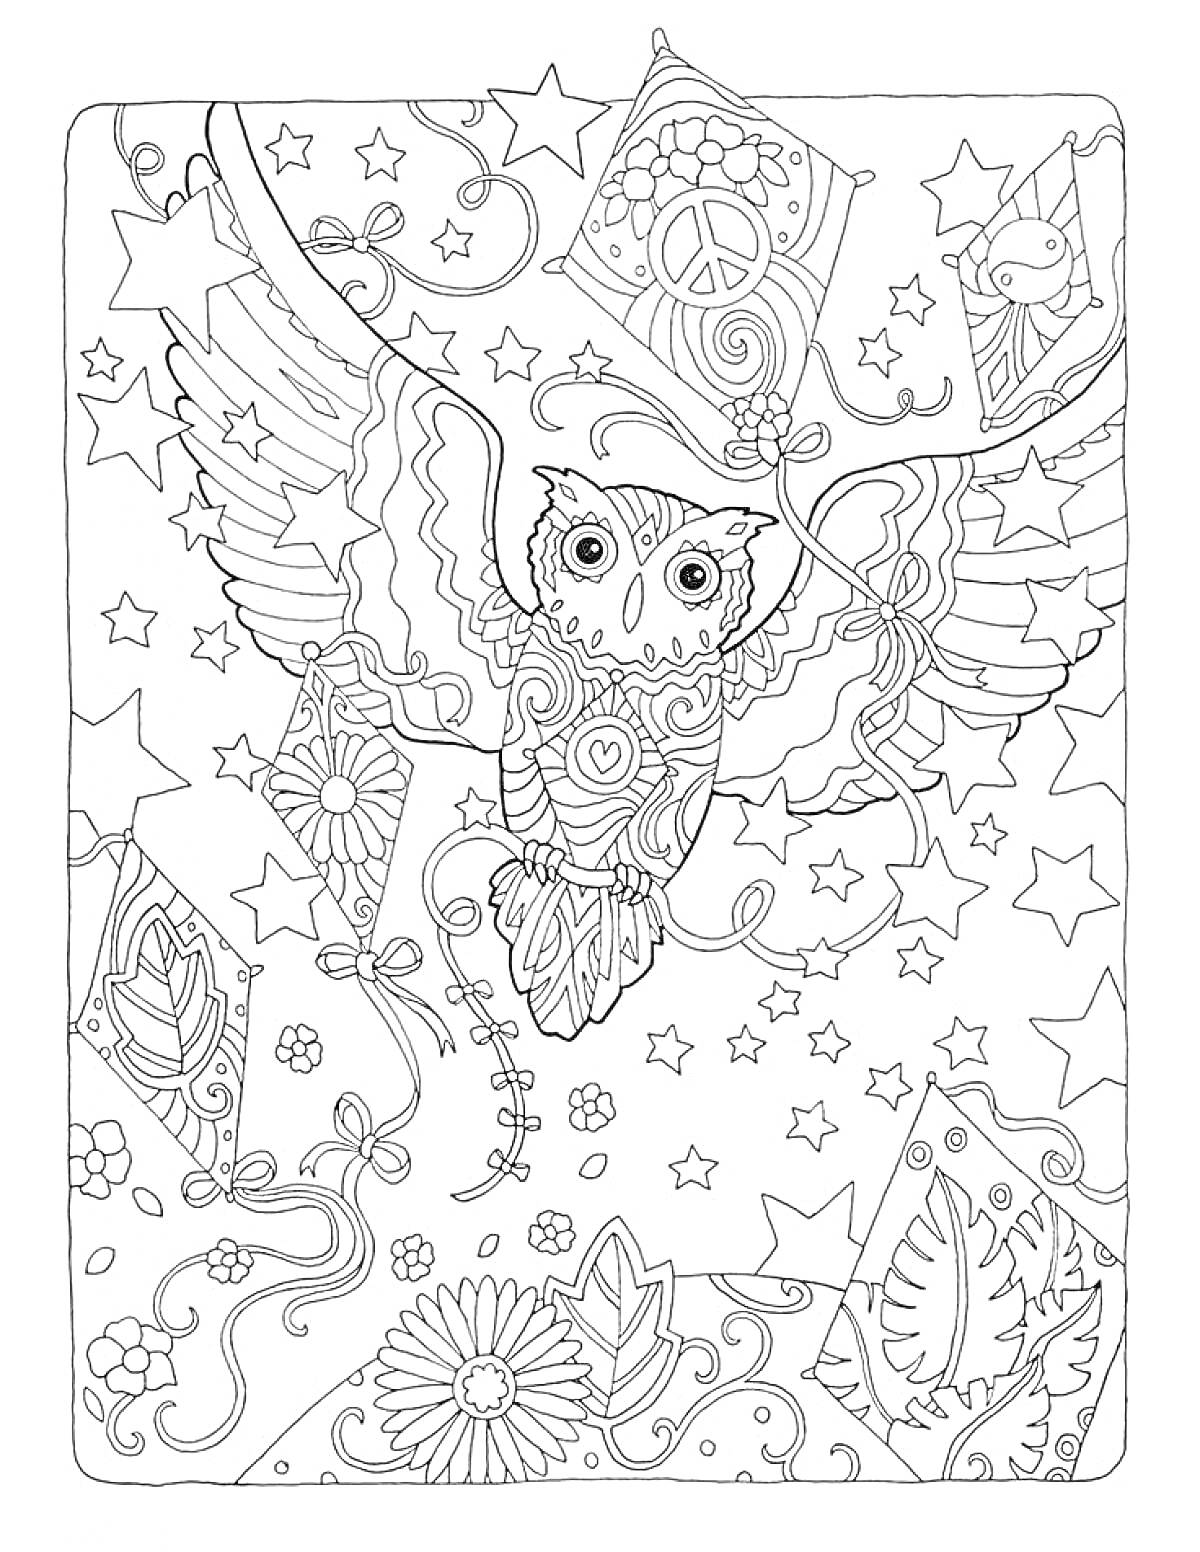 Раскраска антистресс раскраска сова с звездами, лентами, цветами и листьями